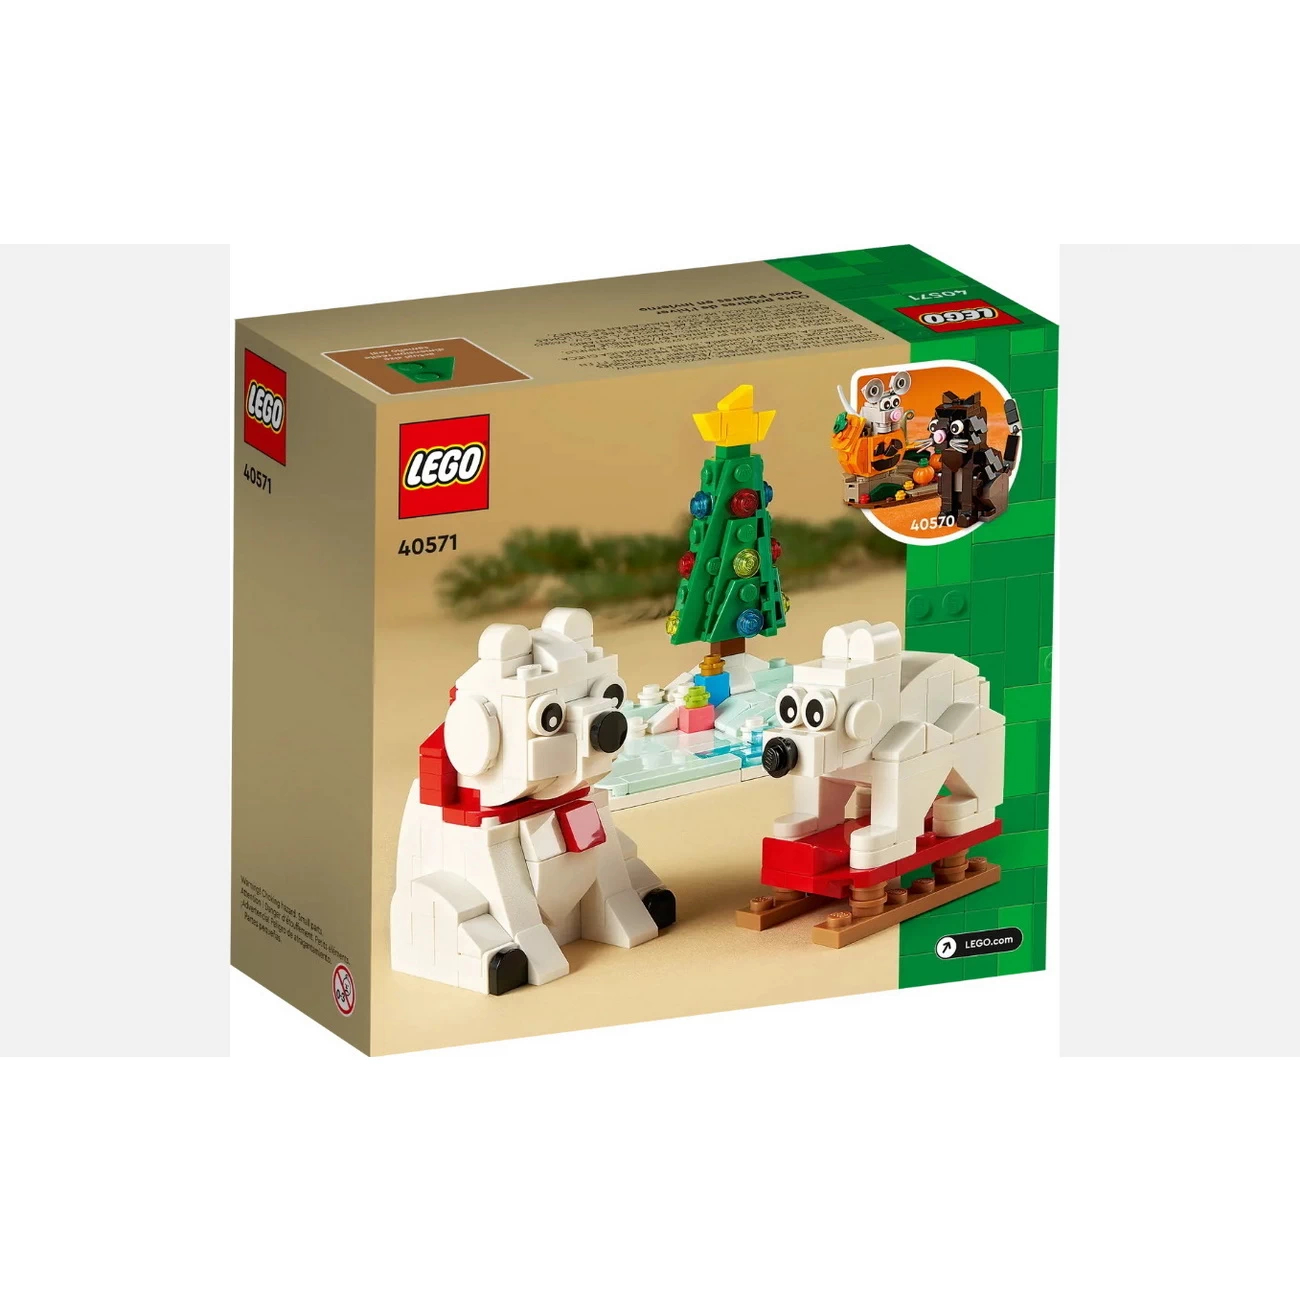 LEGO 40571 - Eisbären im Winter